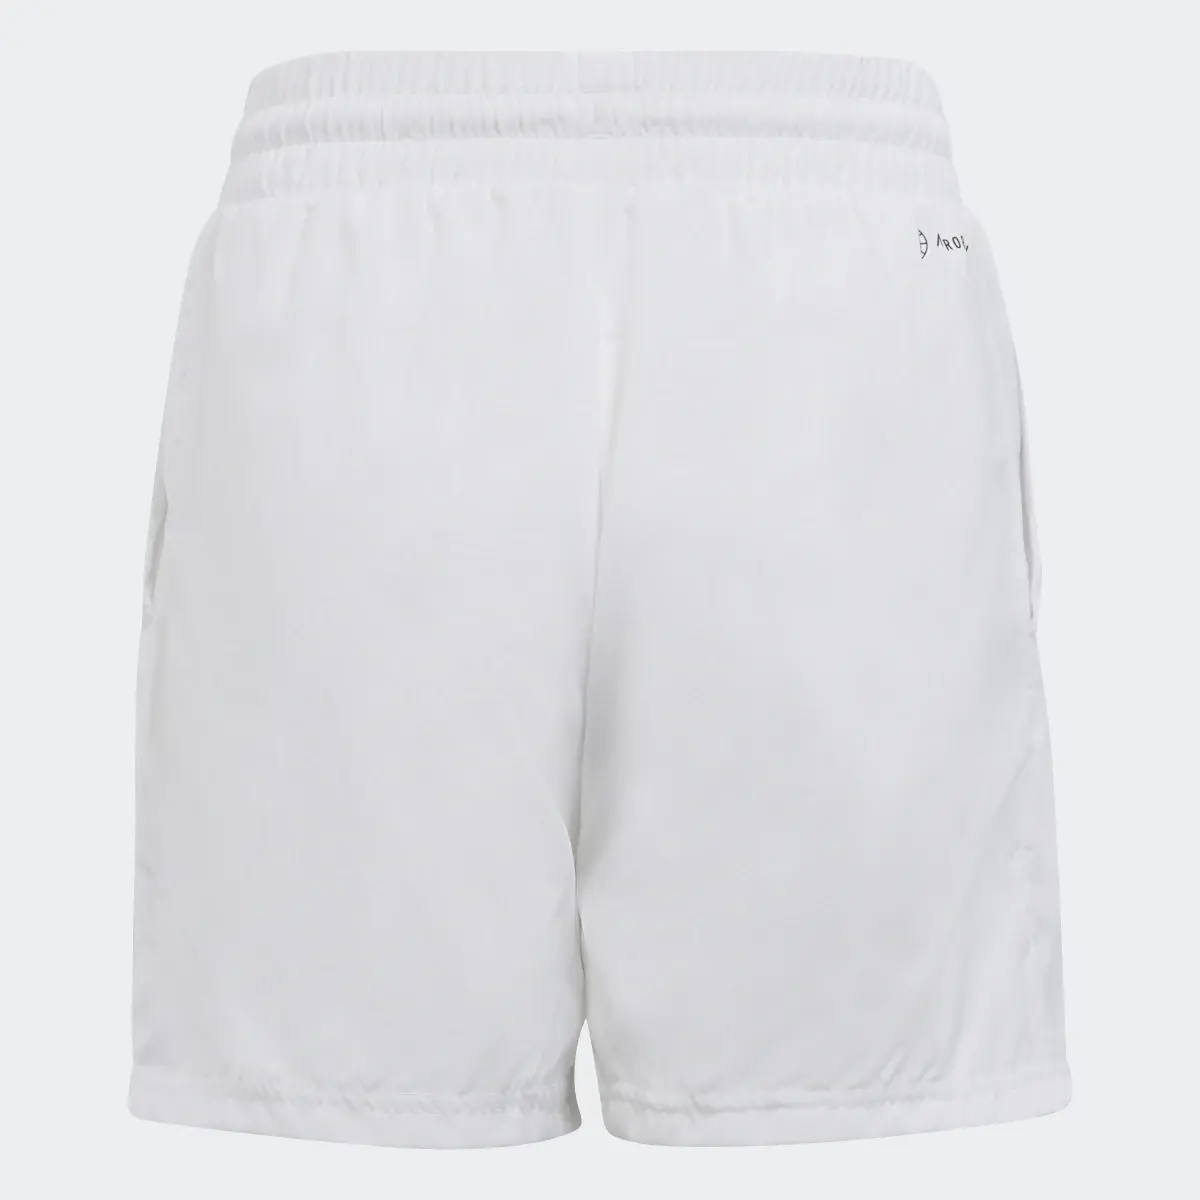 Adidas Club Tennis 3-Stripes Shorts. 2